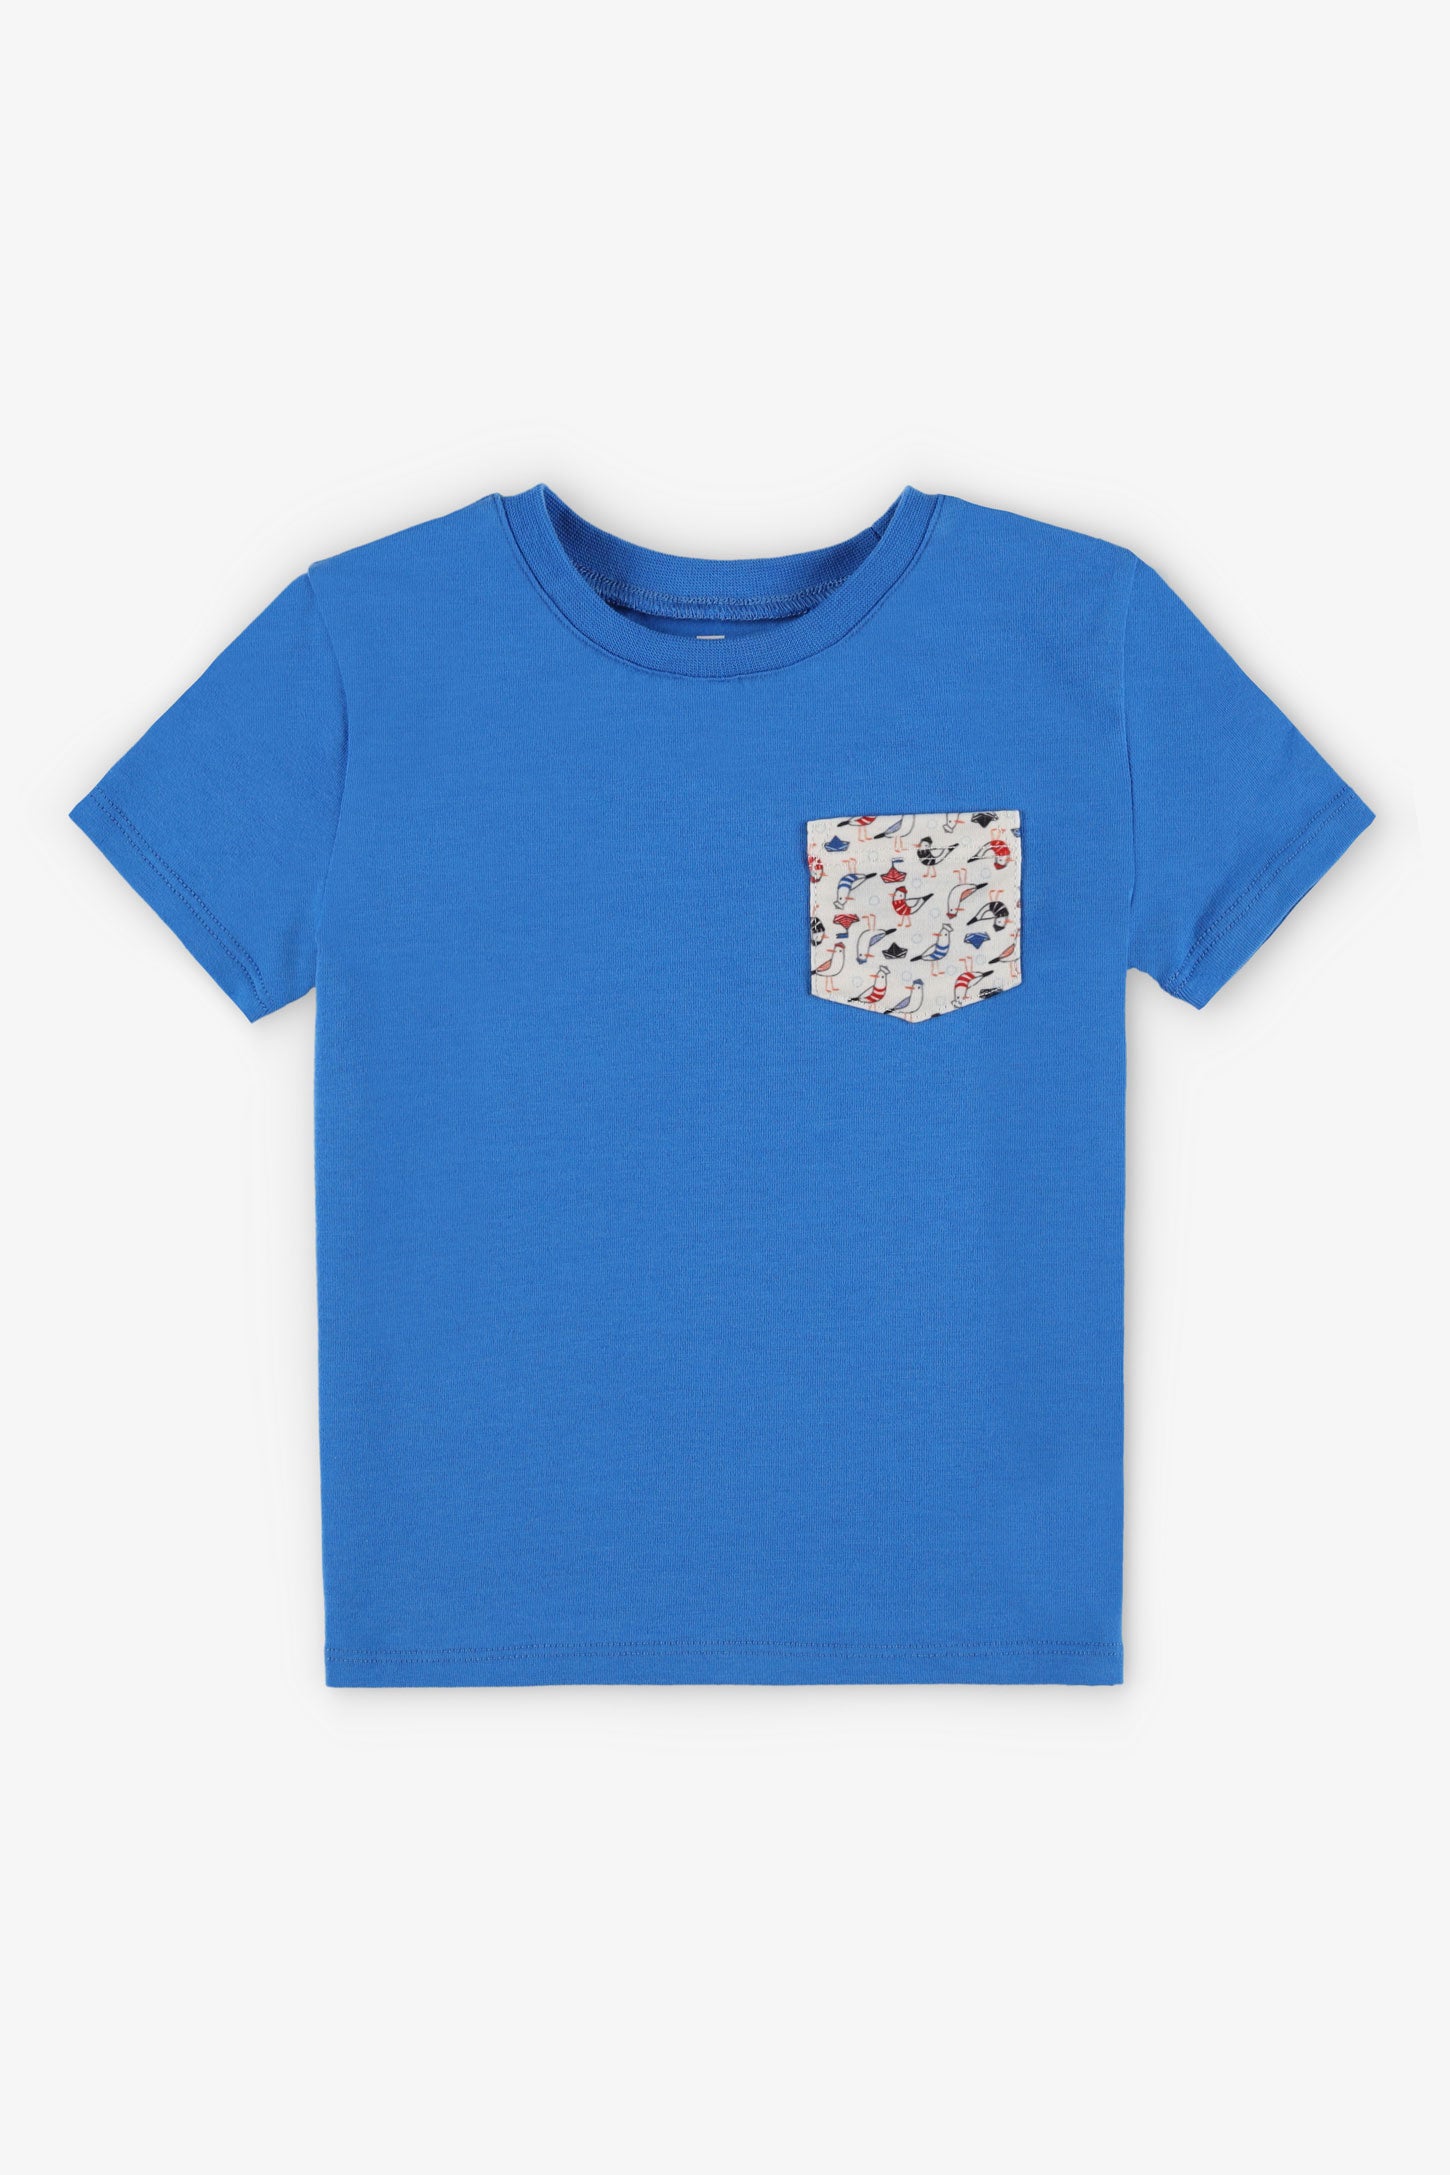 T-shirt col rond coupe droite coton, 2/15$ - Bébé garçon && BLEU